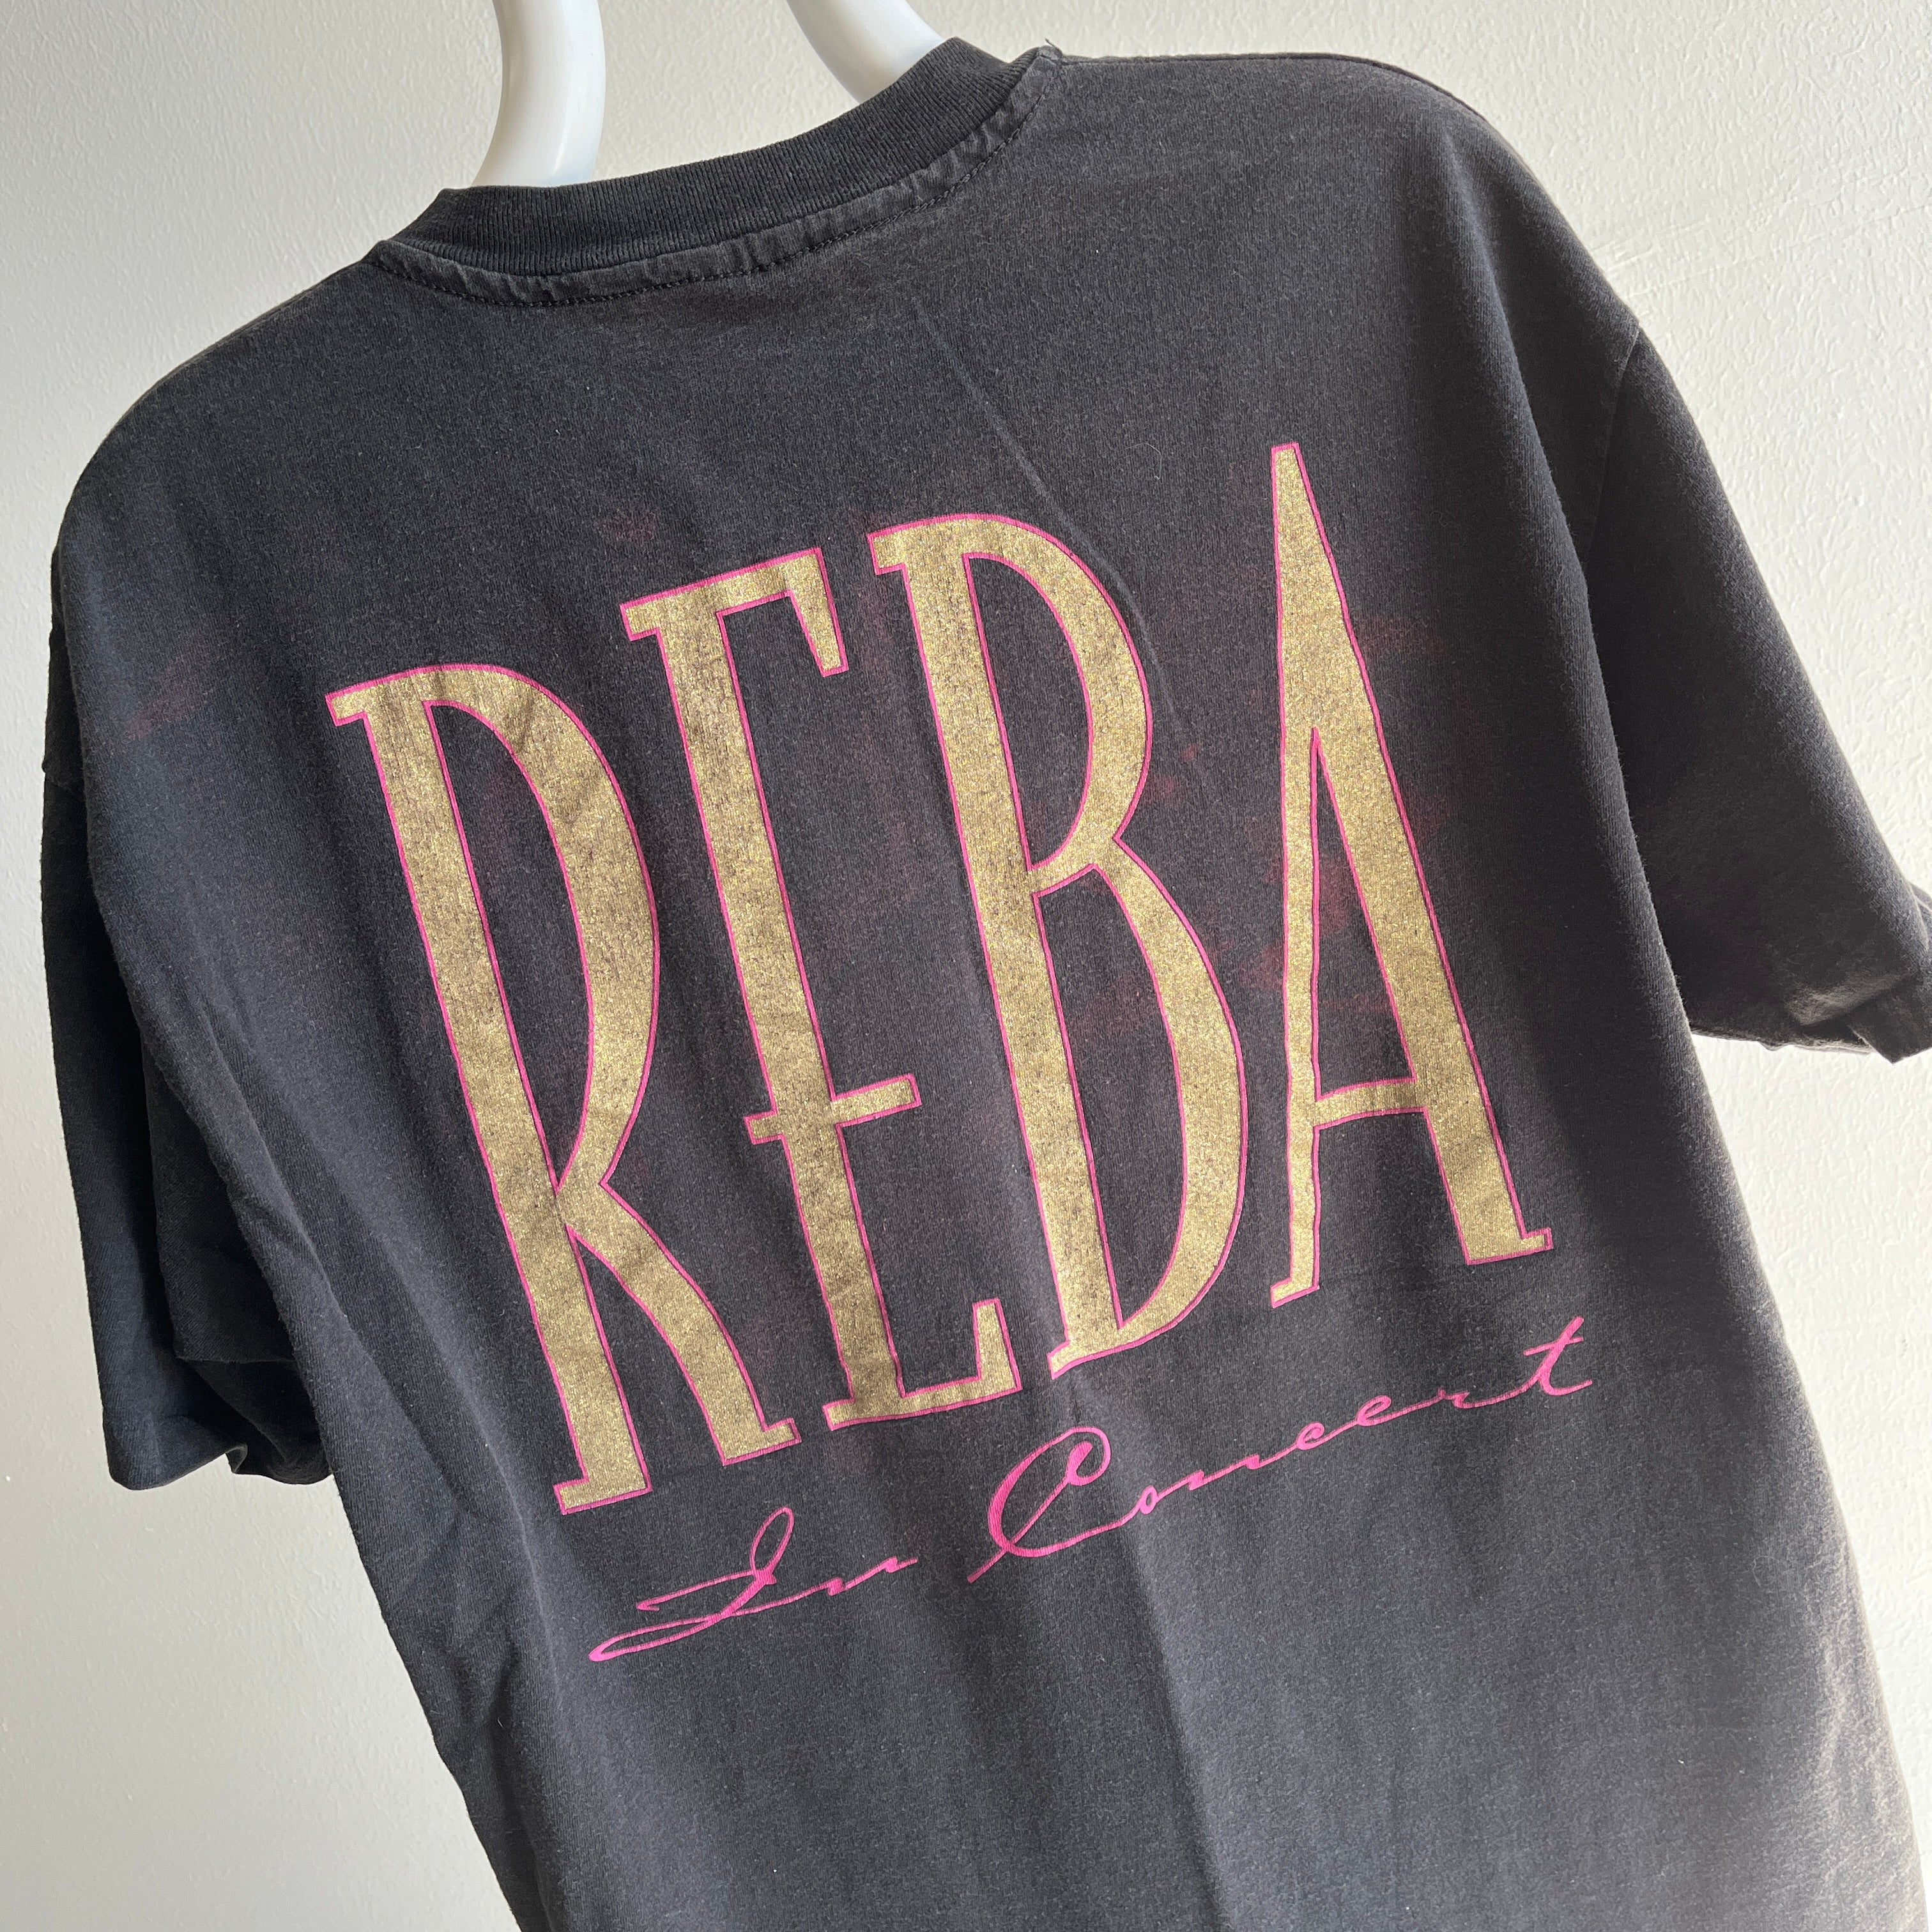 1994 Reba T-shirt avant et arrière